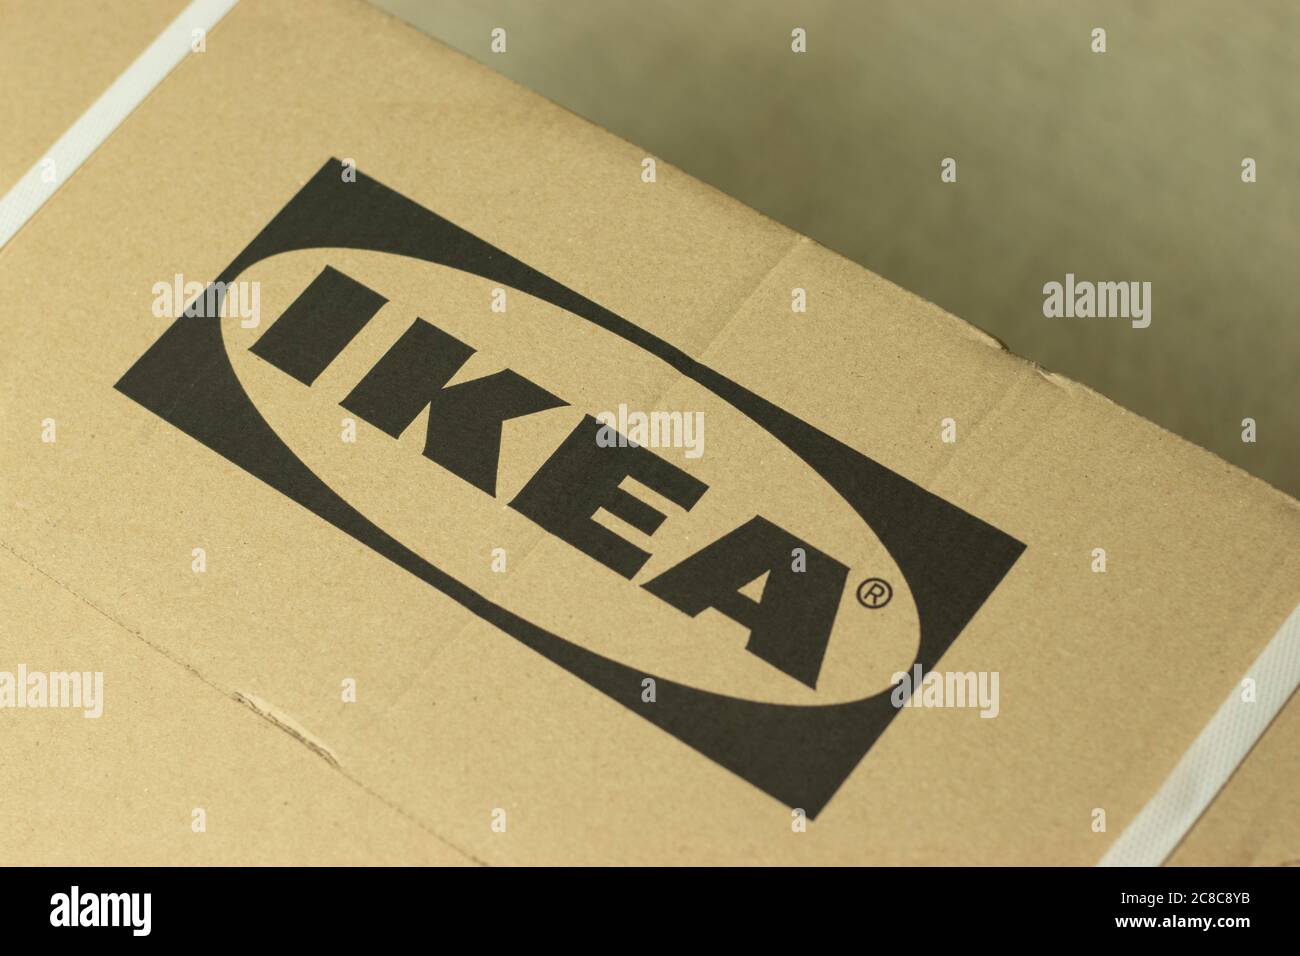 Moscou, Russie - 1er juin 2020 : logo IKEA sur carton de livraison gros plan , montage illustratif Banque D'Images